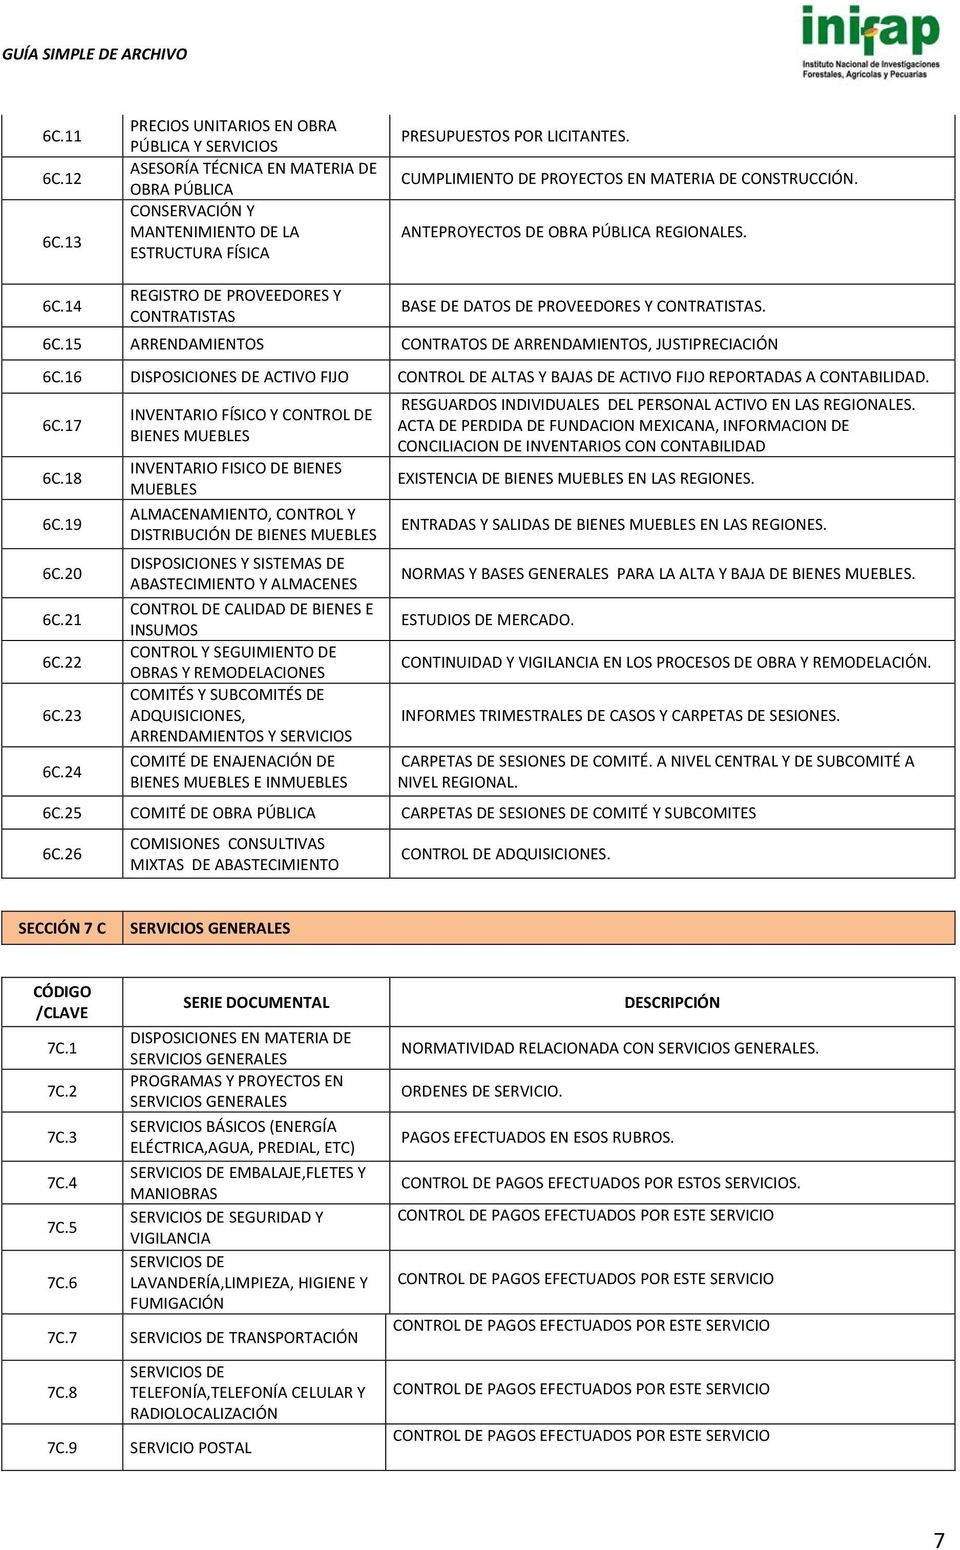 16 DISPOSICIONES DE ACTIVO FIJO CONTROL DE ALTAS Y BAJAS DE ACTIVO FIJO REPORTADAS A CONTABILIDAD. 6C.17 6C.18 6C.19 6C.20 6C.21 6C.22 6C.23 6C.